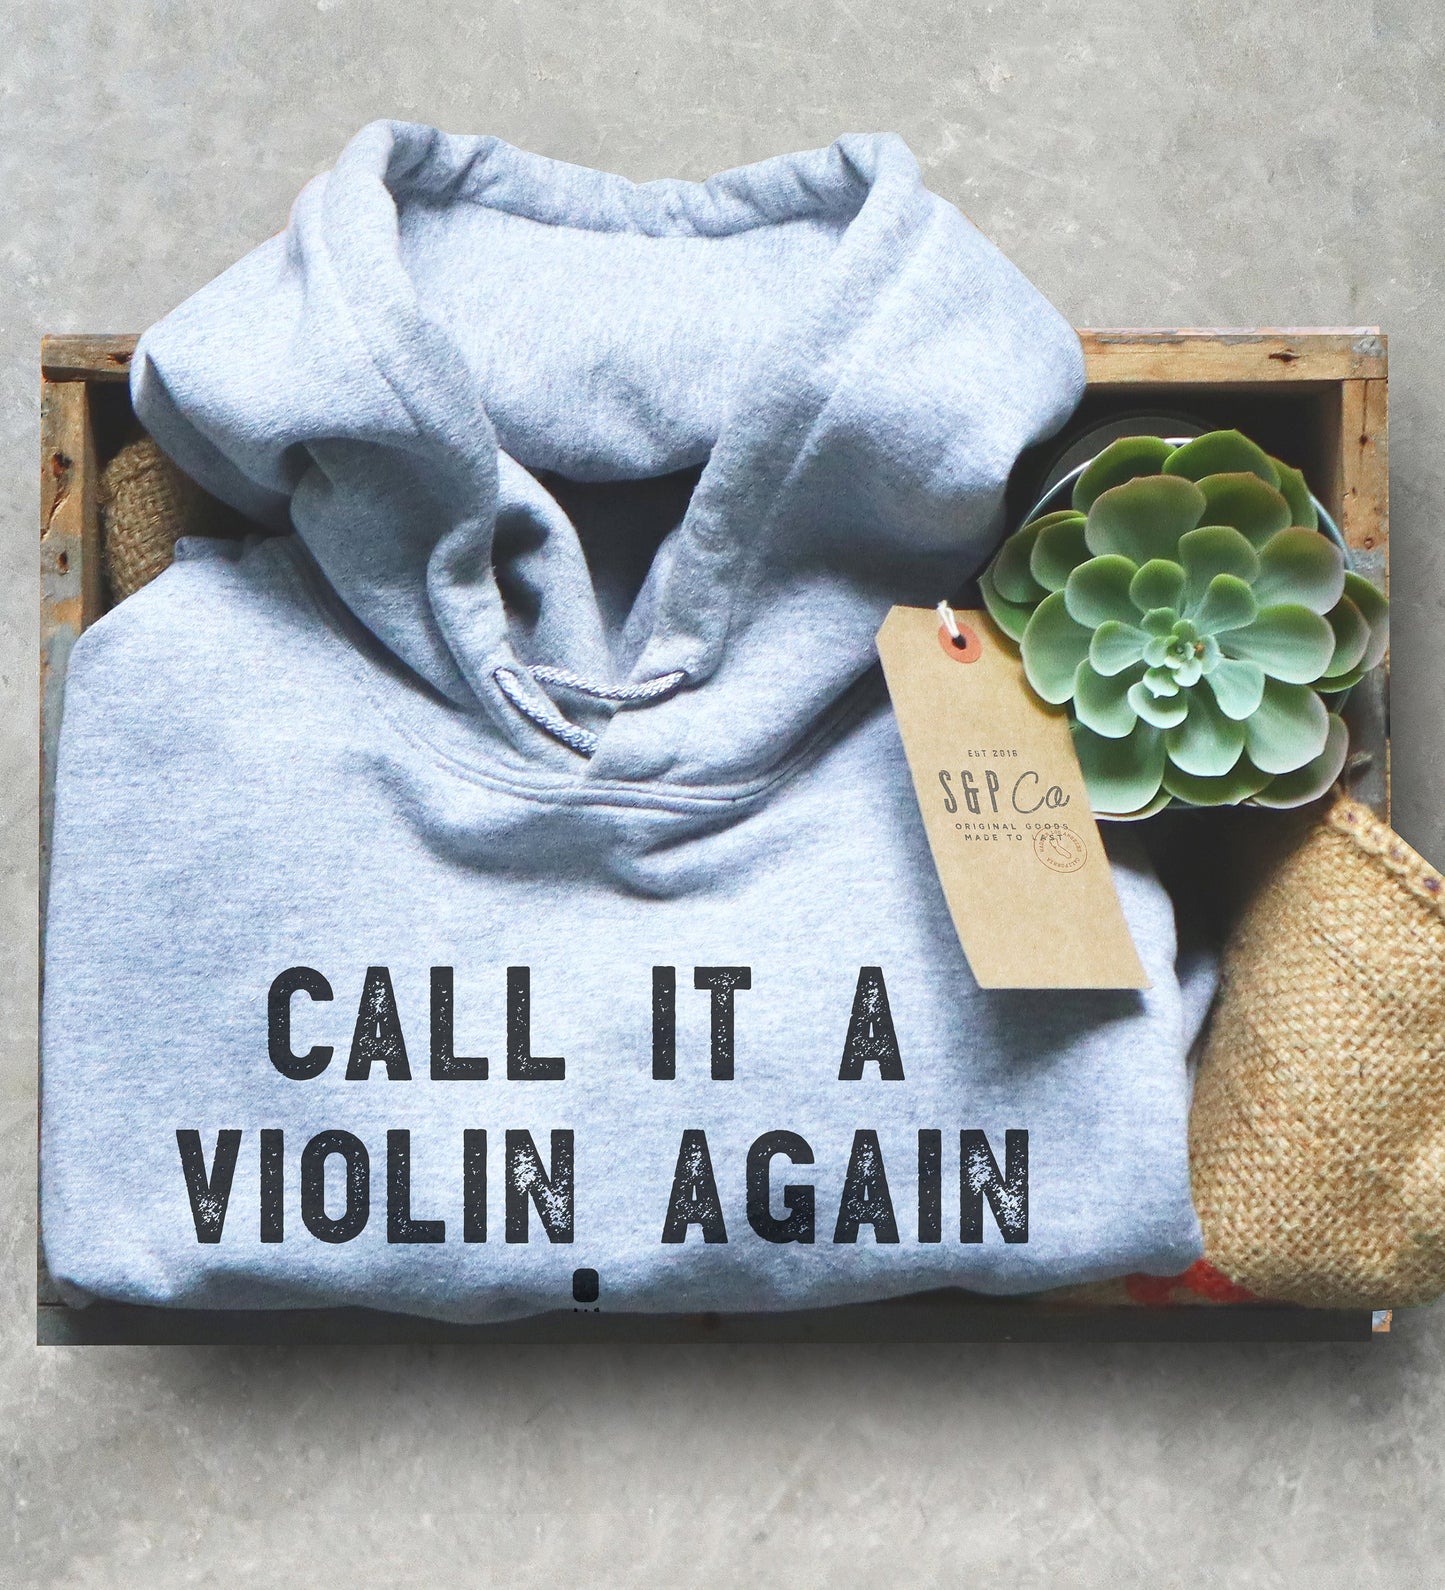 Call It A Violin Again I Dare You Hoodie - Cello Shirt, Cello Art, Cellist Shirt, Musician Gift, Music Shirt, Music Teacher Gift